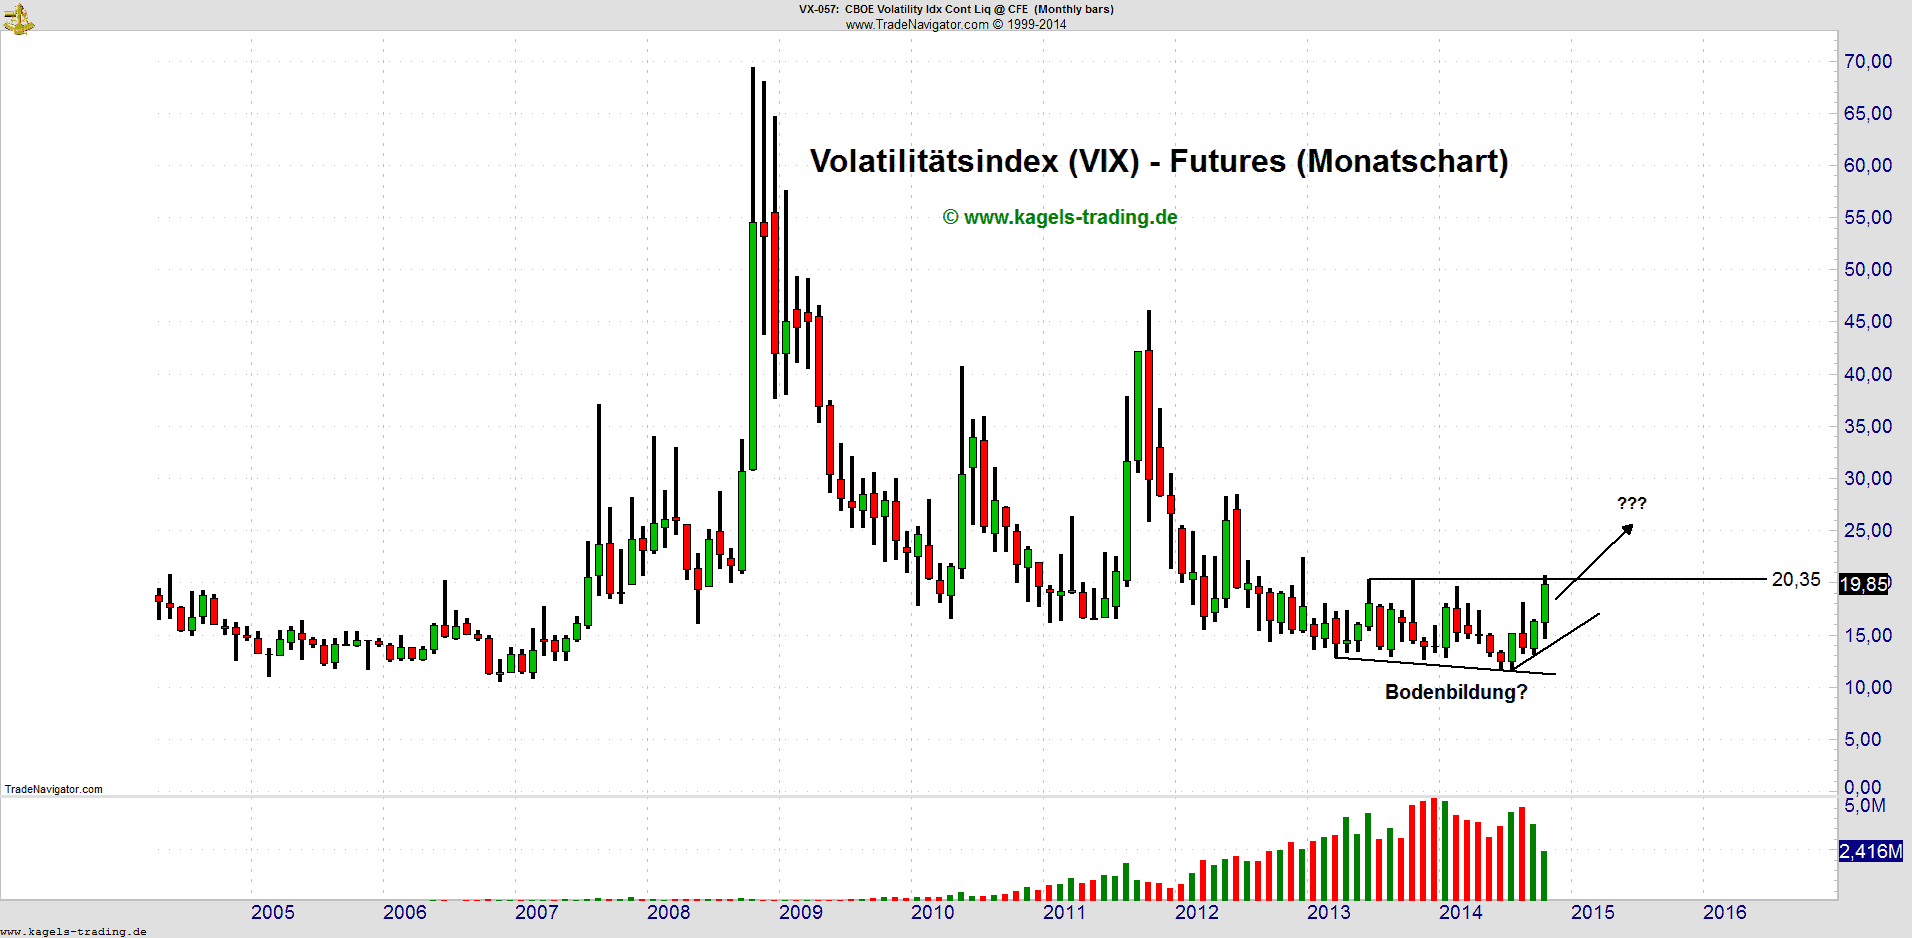 Volatilitätsindex (VIX)